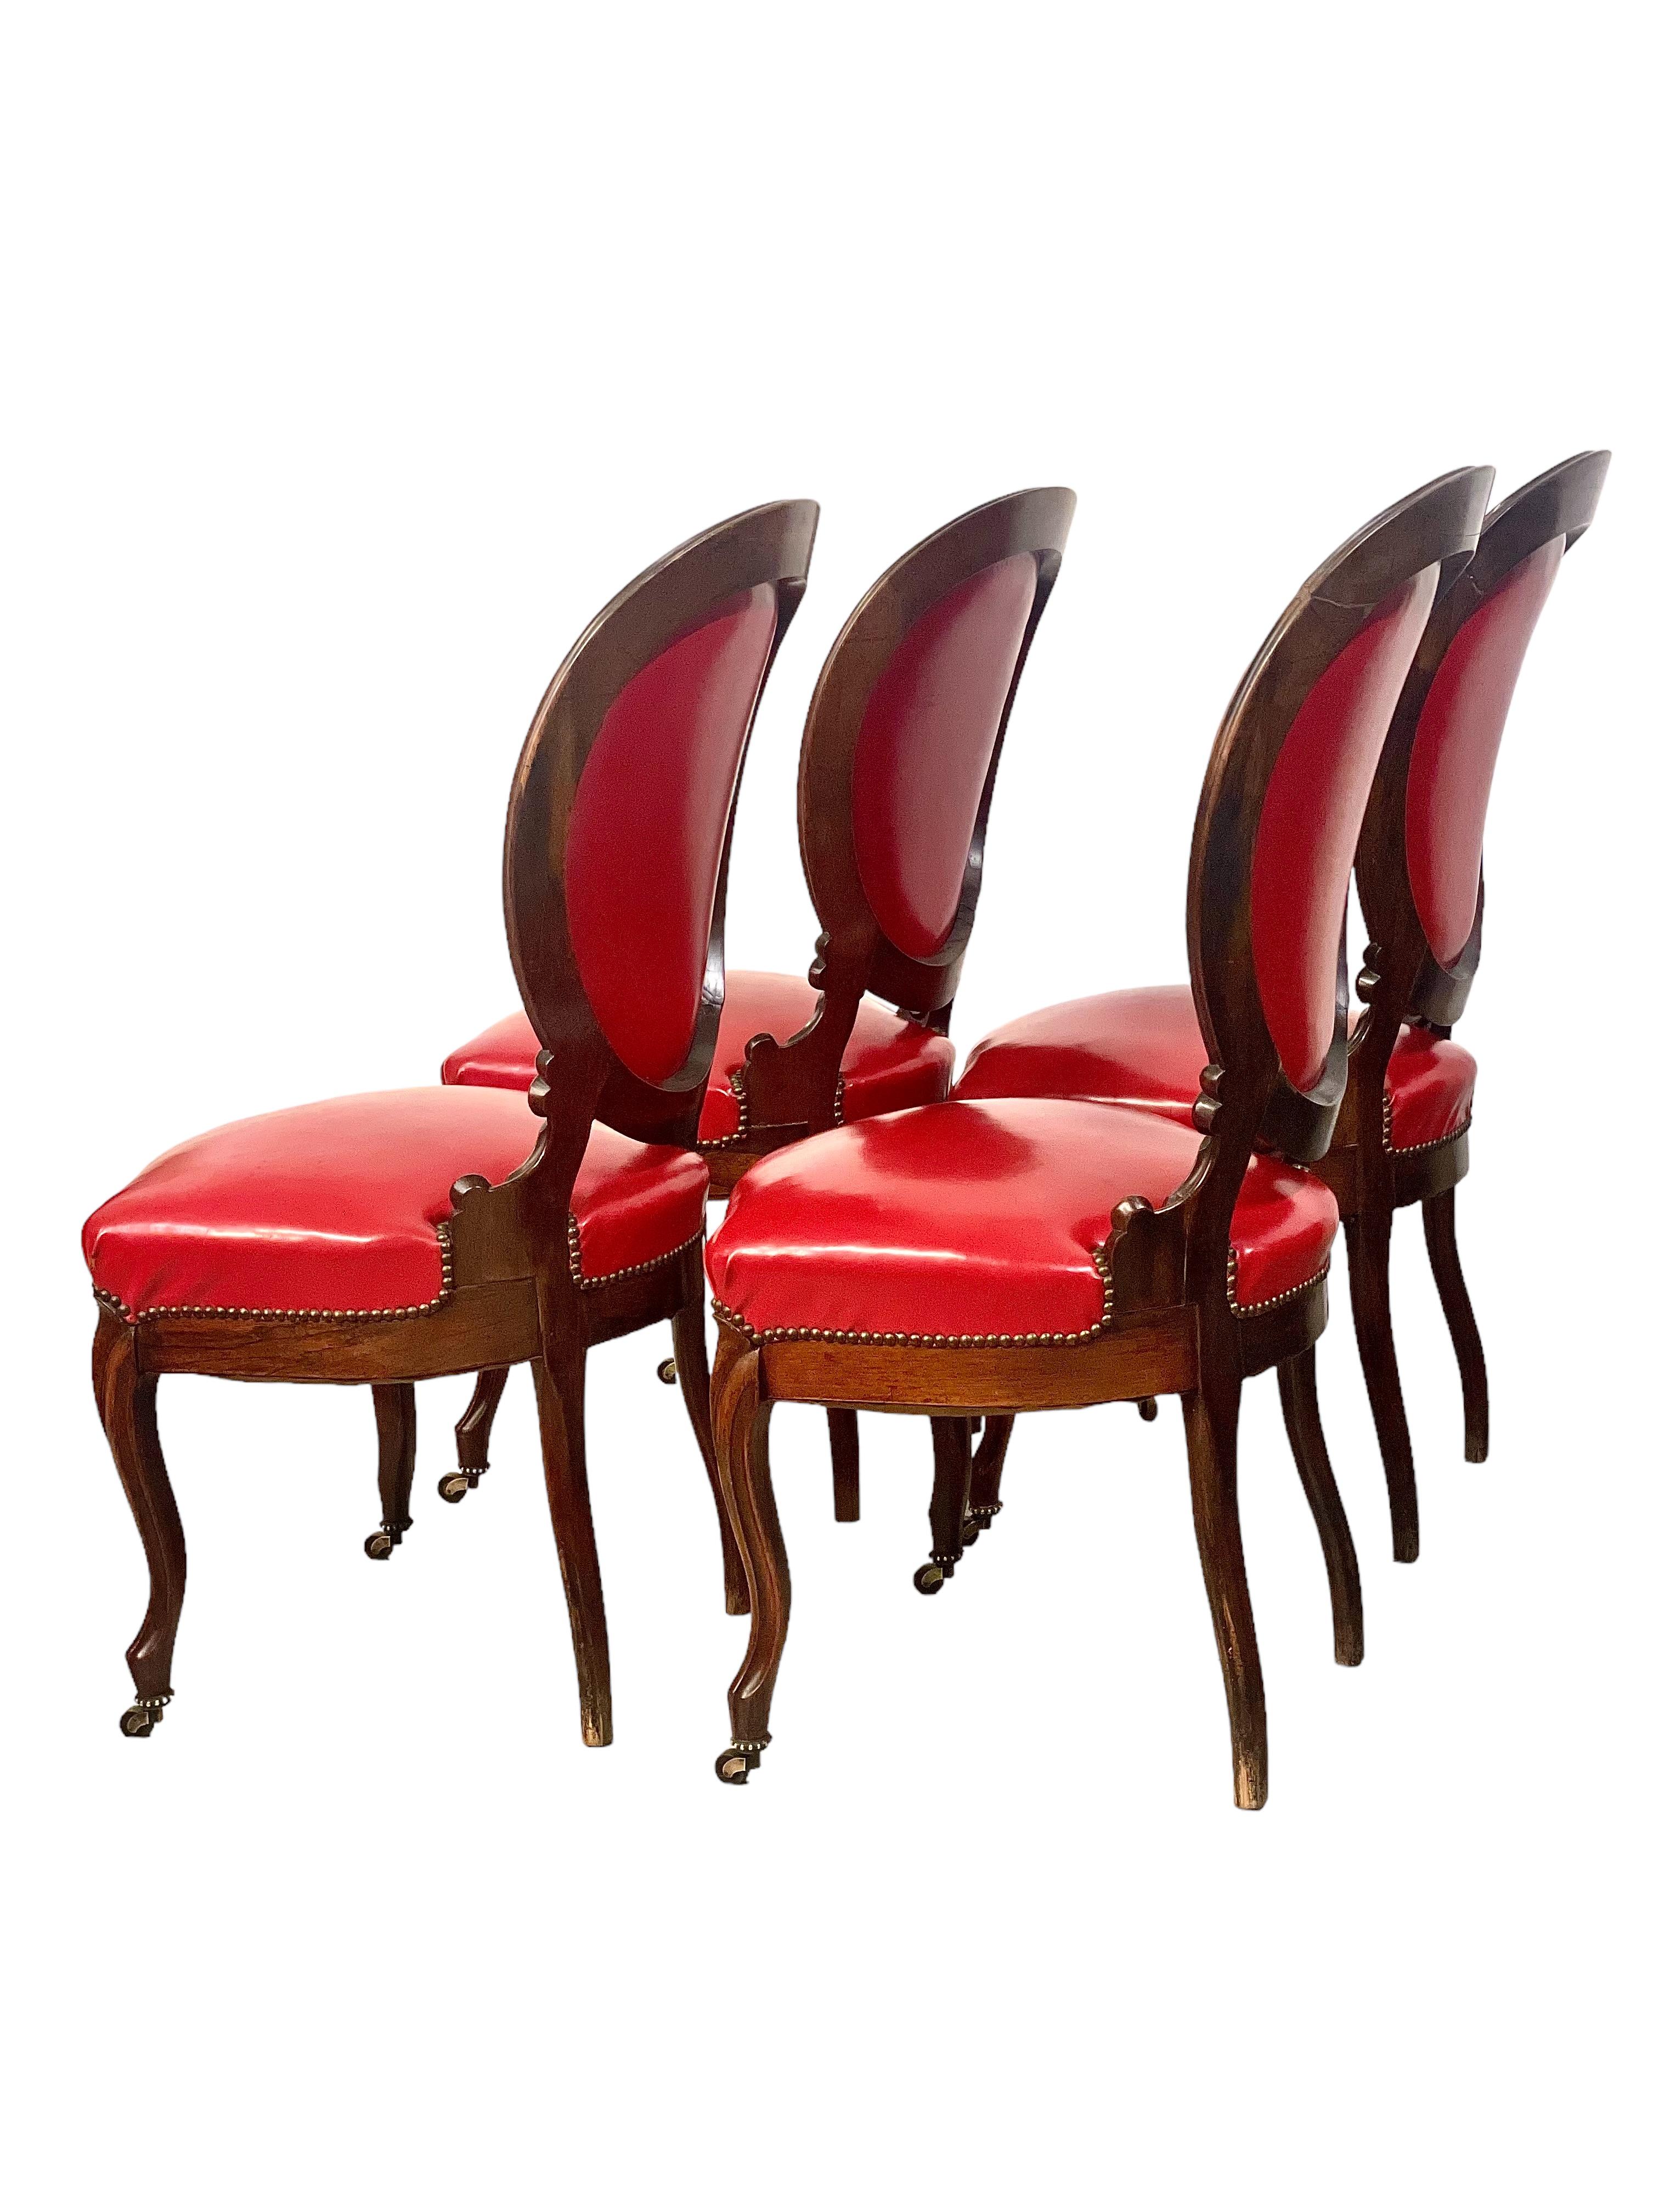 Wir präsentieren ein Set aus vier exquisiten Edelholzstühlen, die die zeitlose Eleganz der Ära Napoleon III. um 1880 verkörpern. Diese Stühle sind aus edlem Holz gefertigt und bestechen durch ihr fesselndes Medaillon-Rückendesign, das